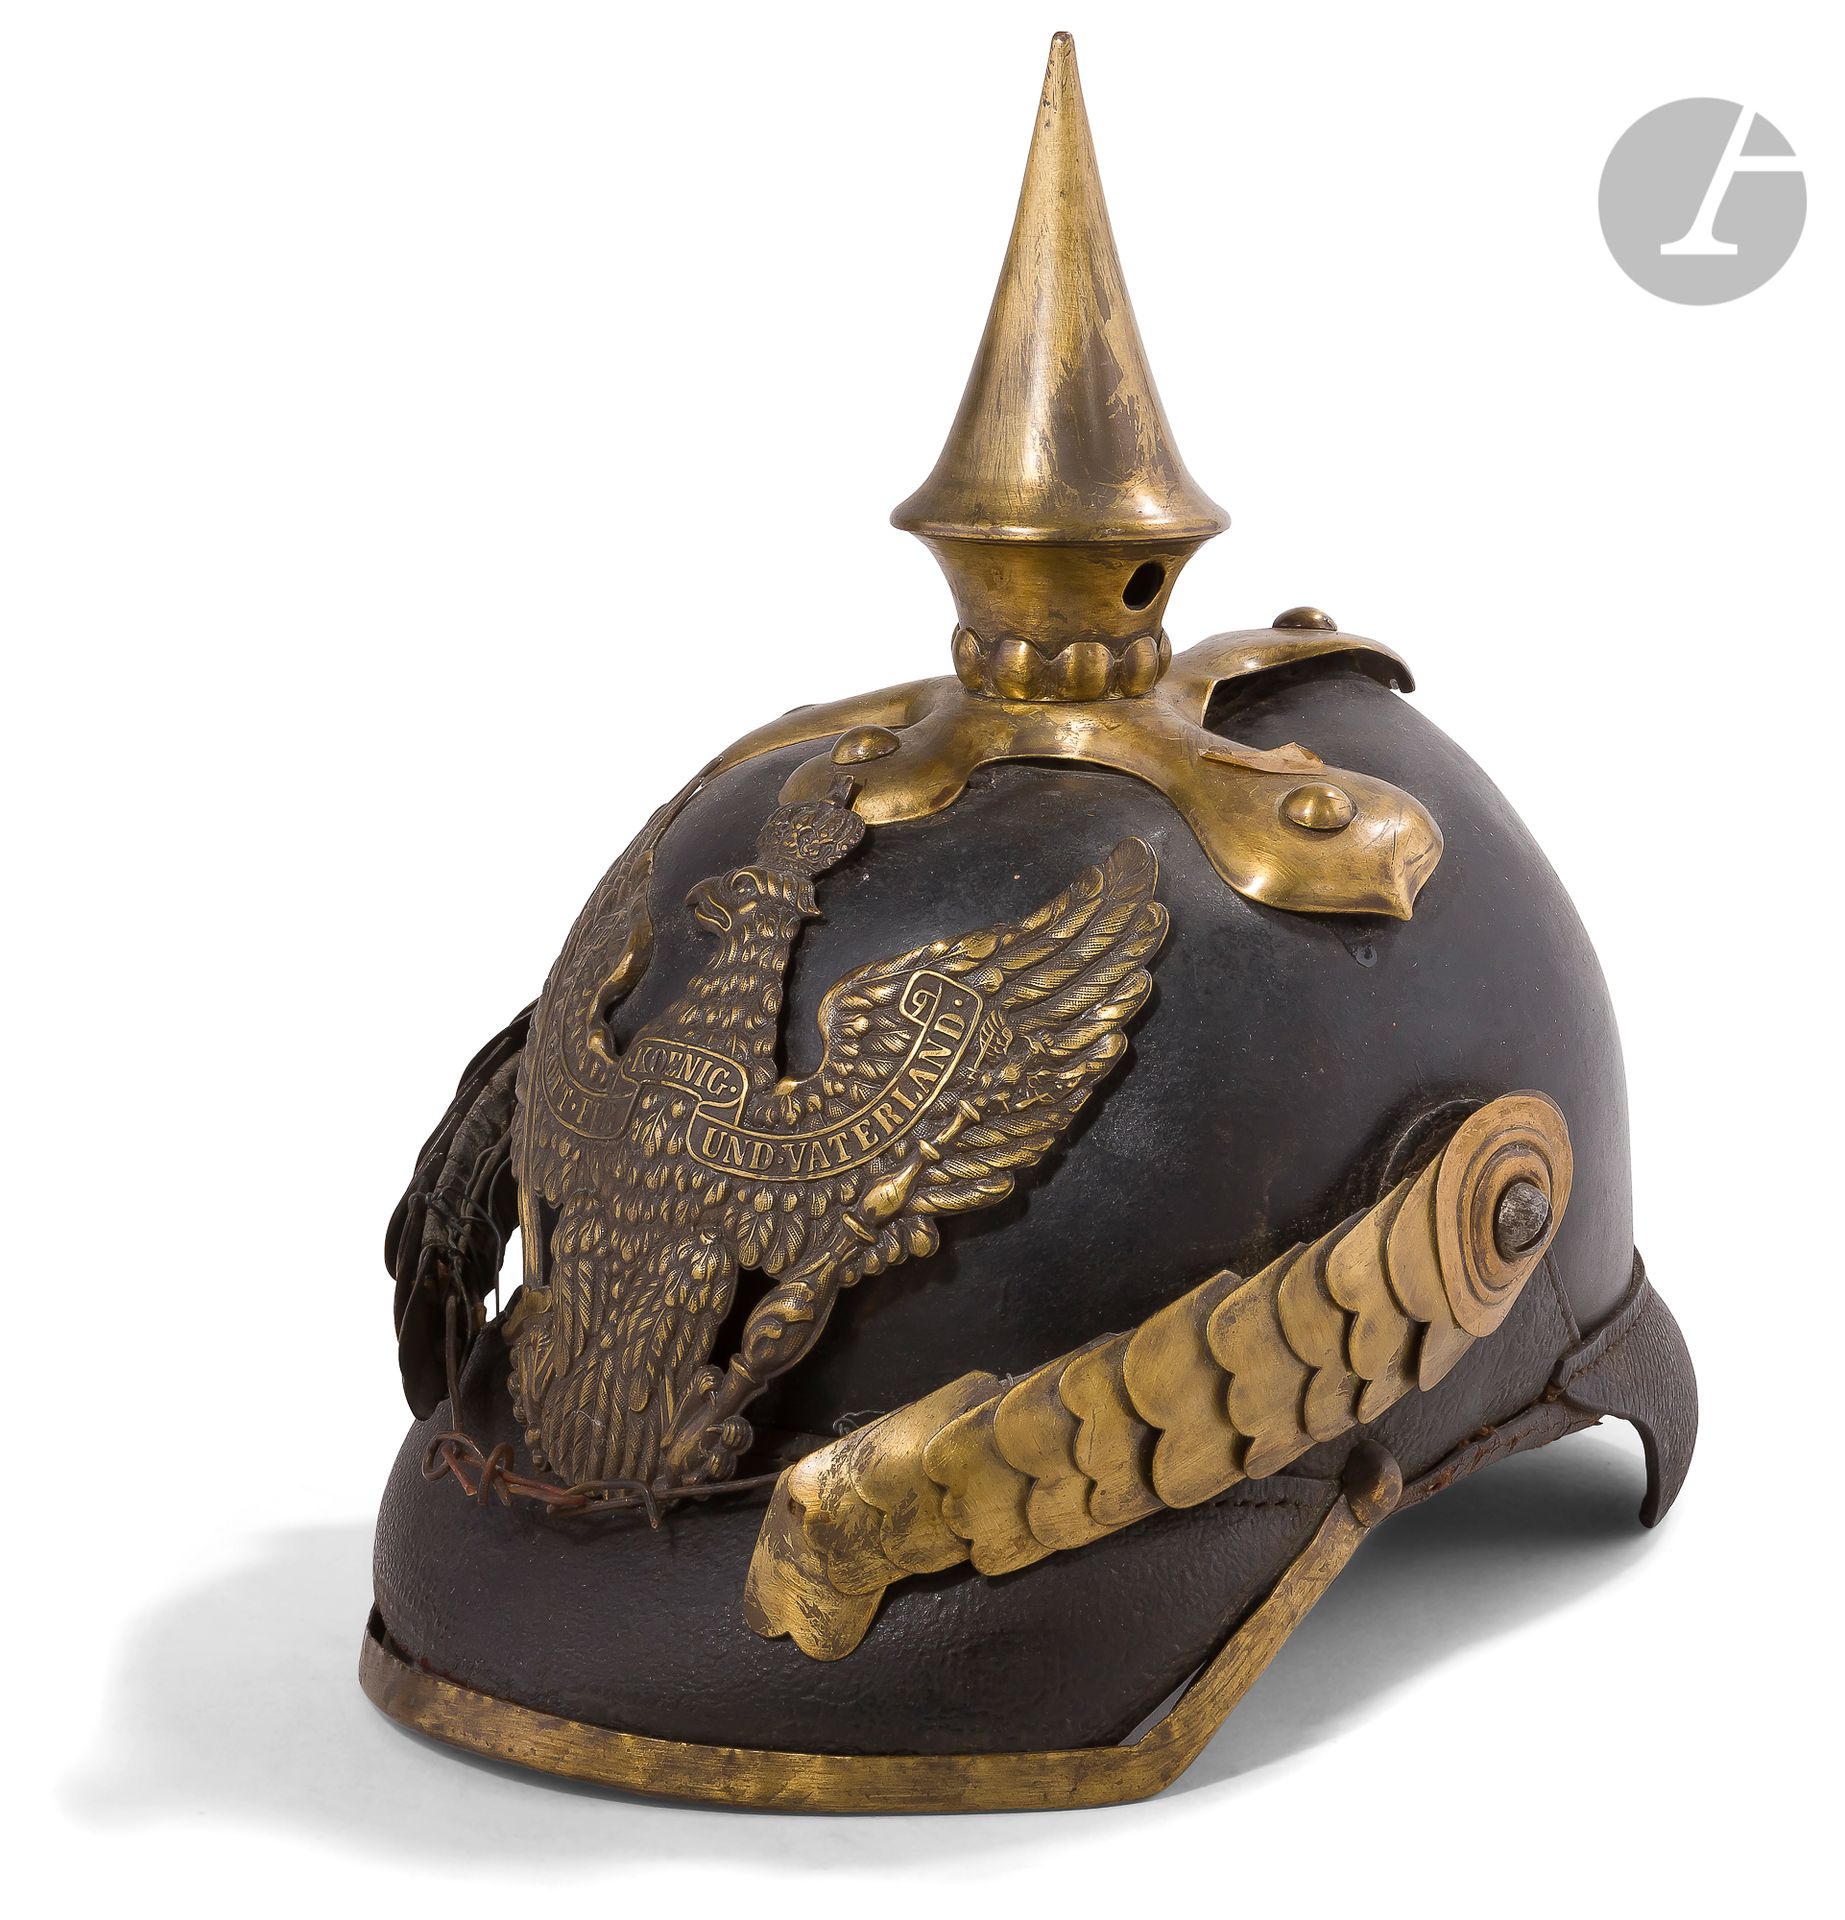 Null 普鲁士龙型头盔，型号为1860。
皮革炸弹。带鹰的盘子。点在三叶草底座上。鳞次栉比的颏带。铜带和护颈。鸡冠花，内部皮帽。
E.M.（事故，失踪）。